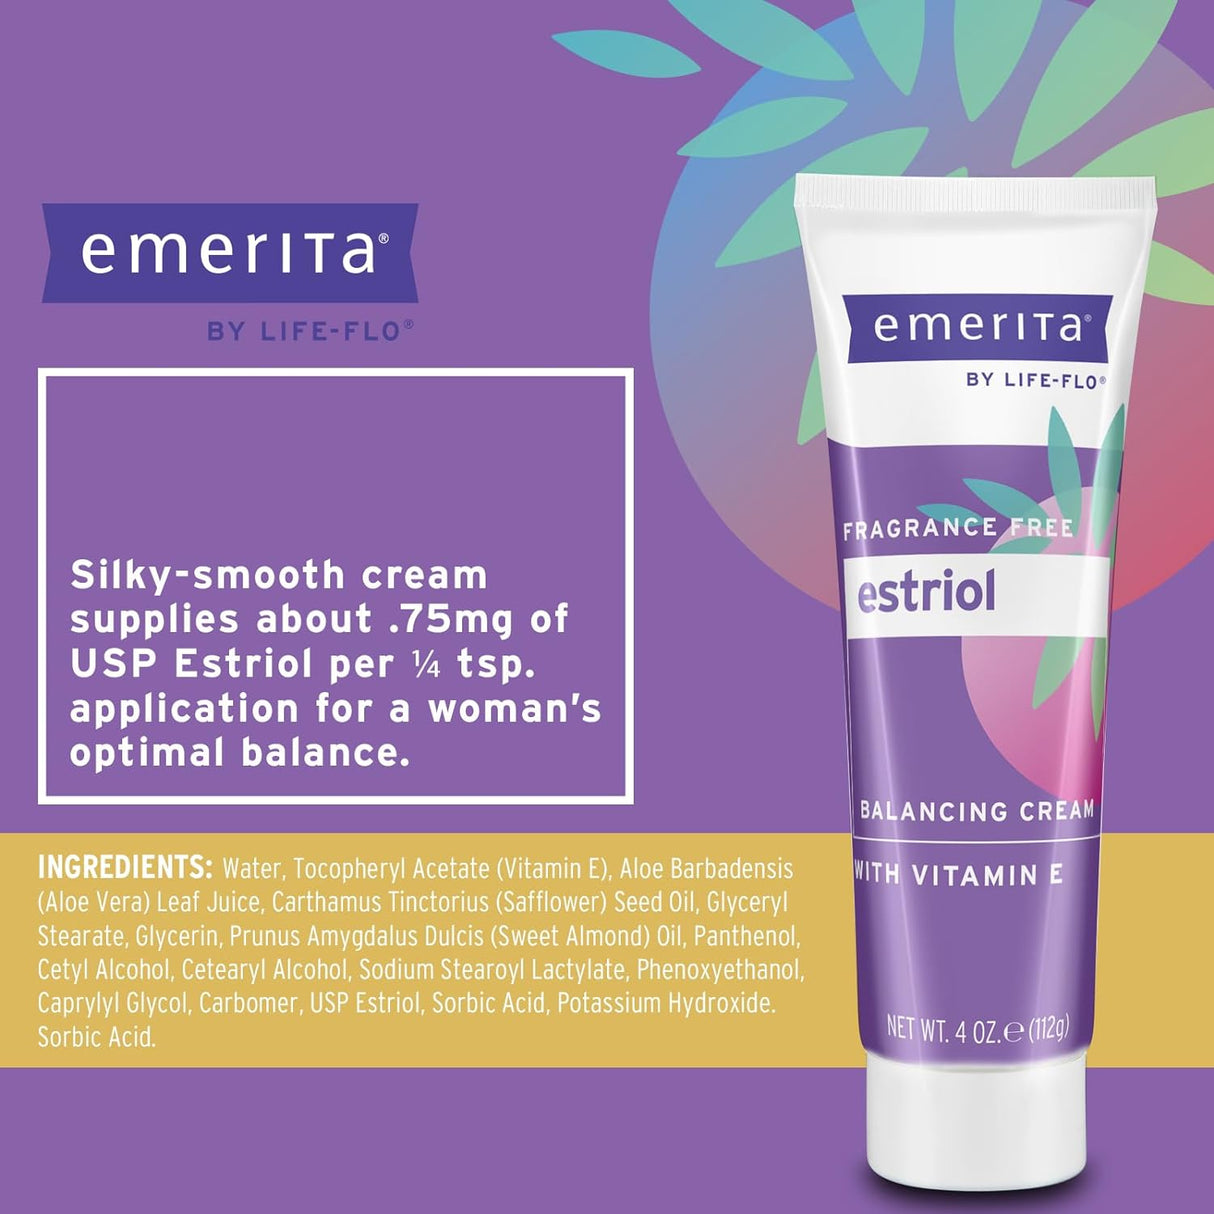 Emerita by Life-flo Pro-Gest Balancing Cream and Estriol Balancing Cream 4Oz.